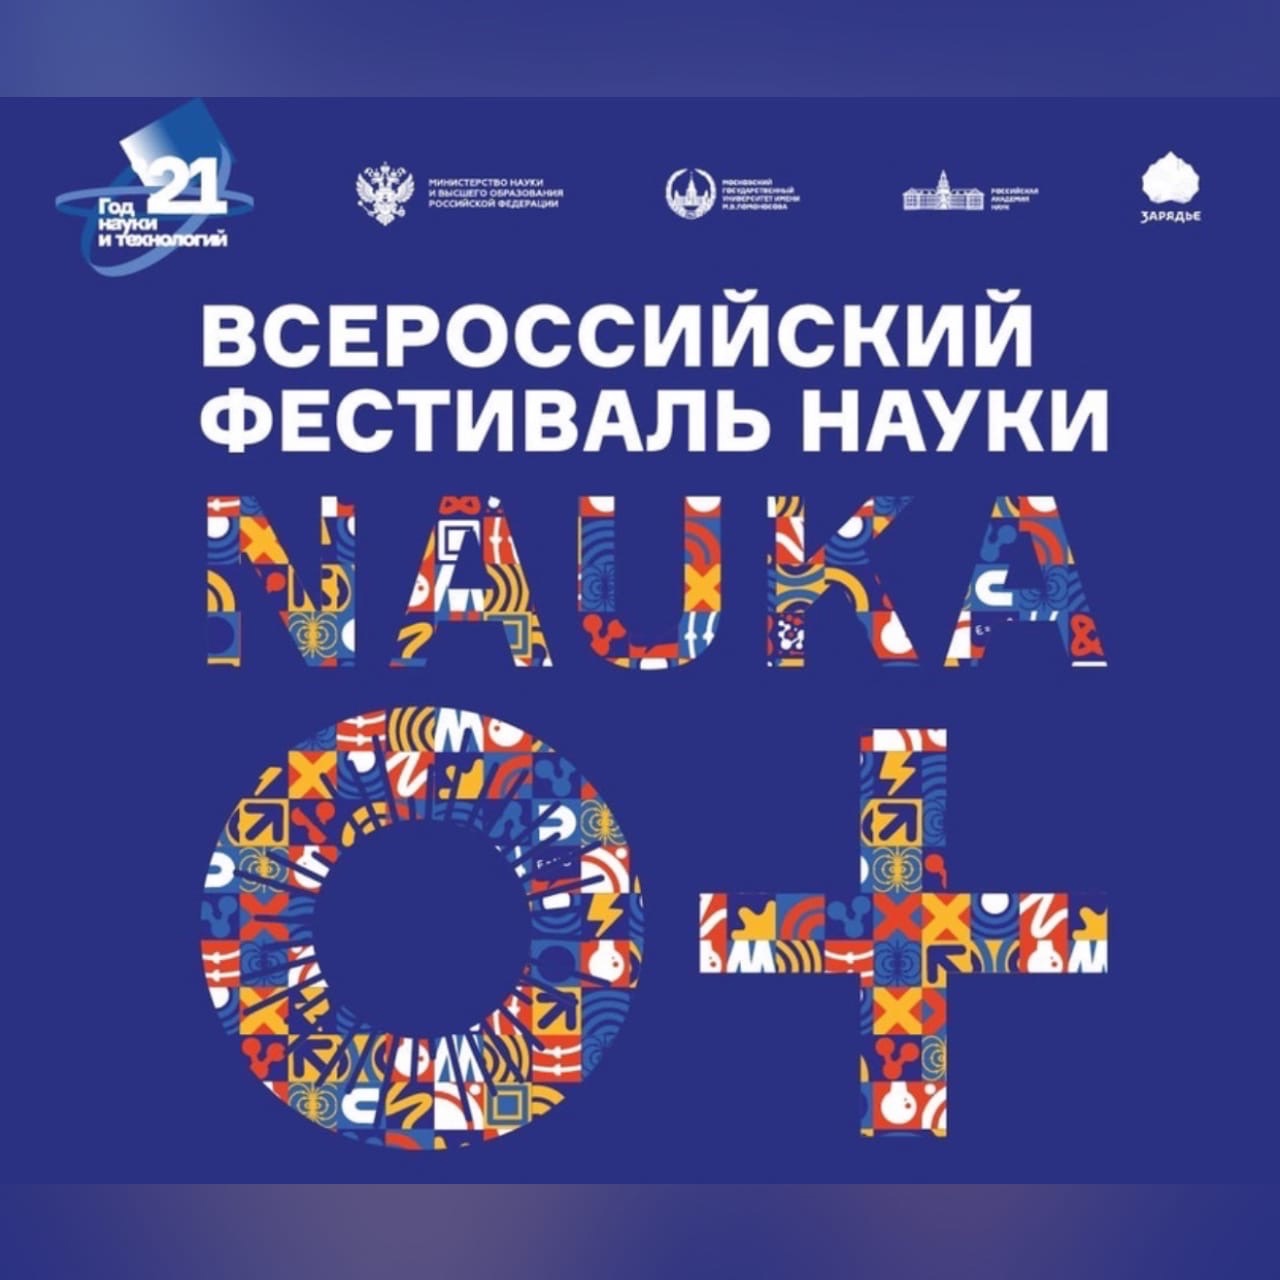 В Смоленской области пройдет Всероссийский Фестиваль науки NAUKA 0+